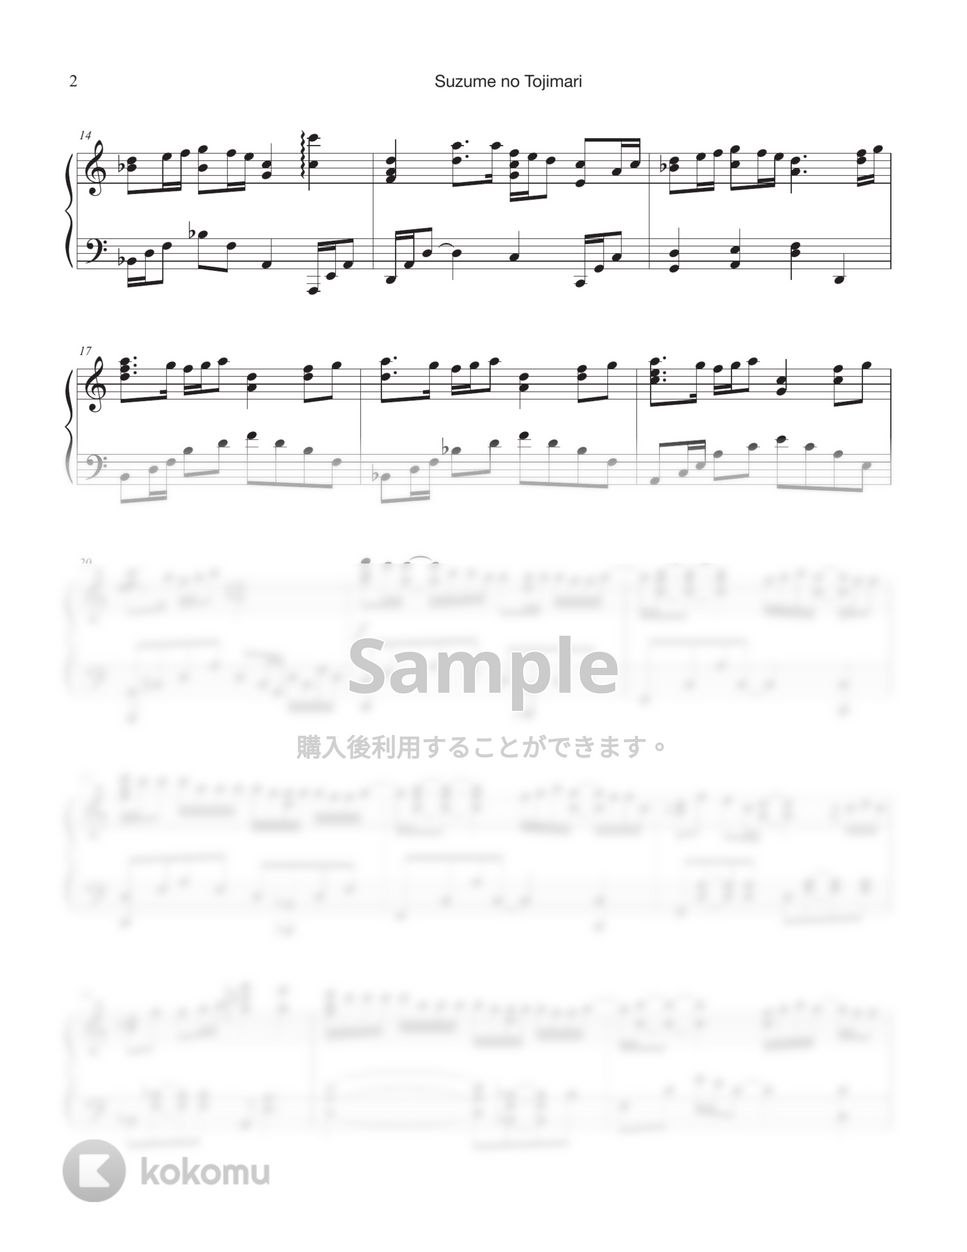 『すずめの戸締まり』OST - 『すずめの戸締まり』 (Short ver.) by Tully Piano